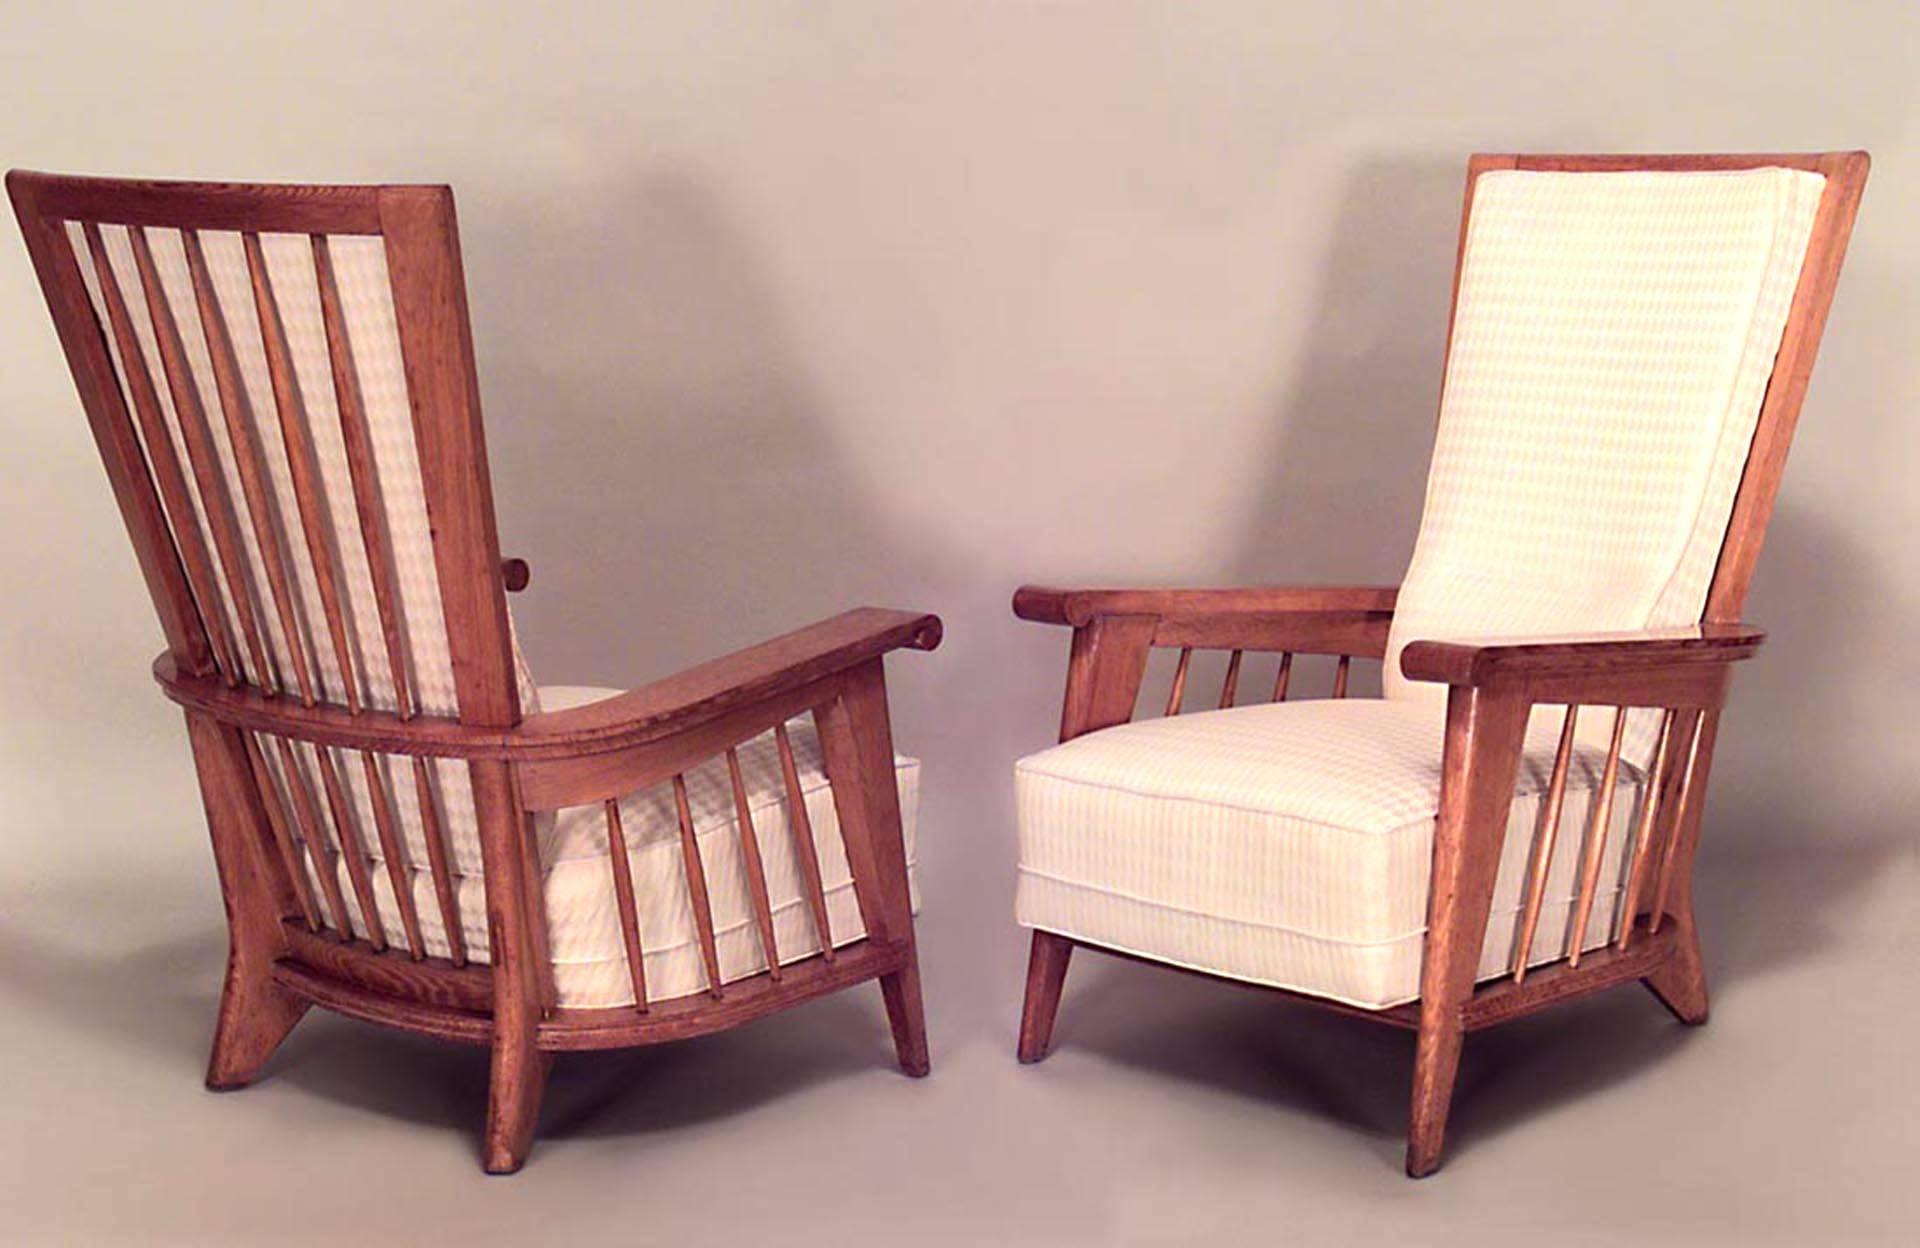 Paire de fauteuils à haut dossier en chêne, datant du milieu du siècle dernier (années 1940), avec côtés en forme de fuseau et assise et dossier rembourrés (attribués à JACQUES ADNET) (PRIX DE LA Paire)
